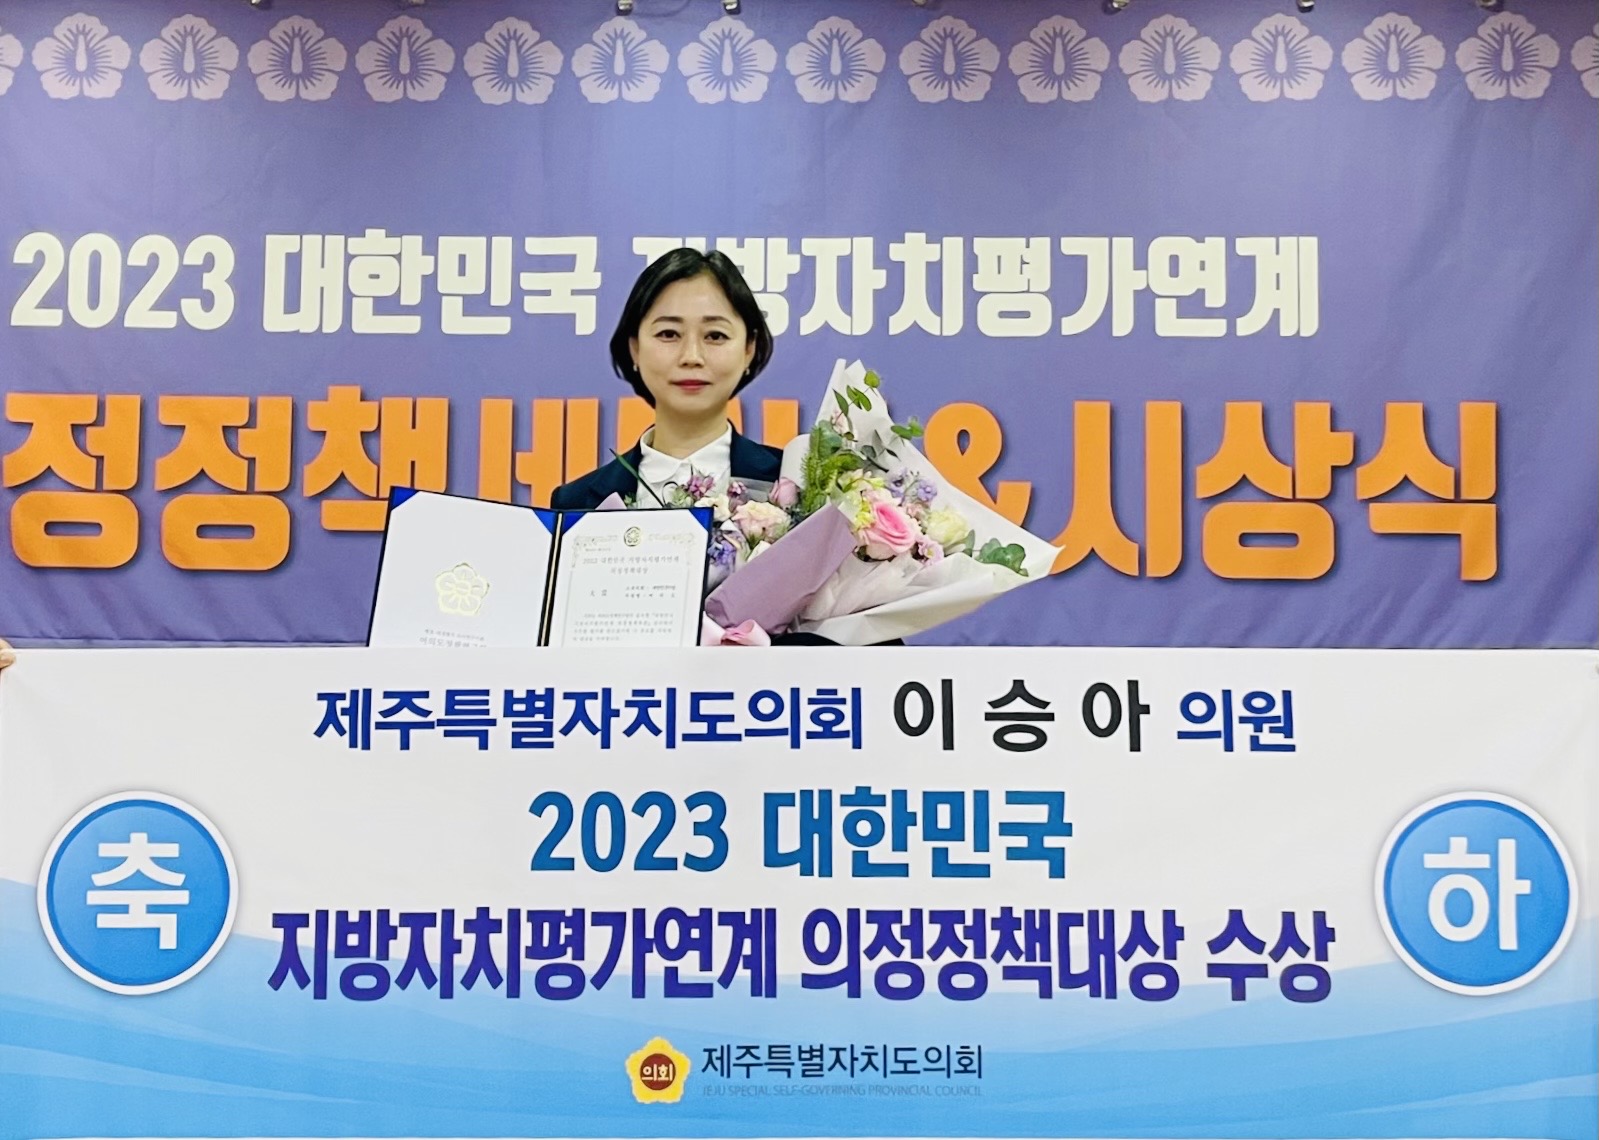 이승아 의원, 2023 대한민국 지방자치평가연계 의정정책대상 “최우수상” 수상 ! 